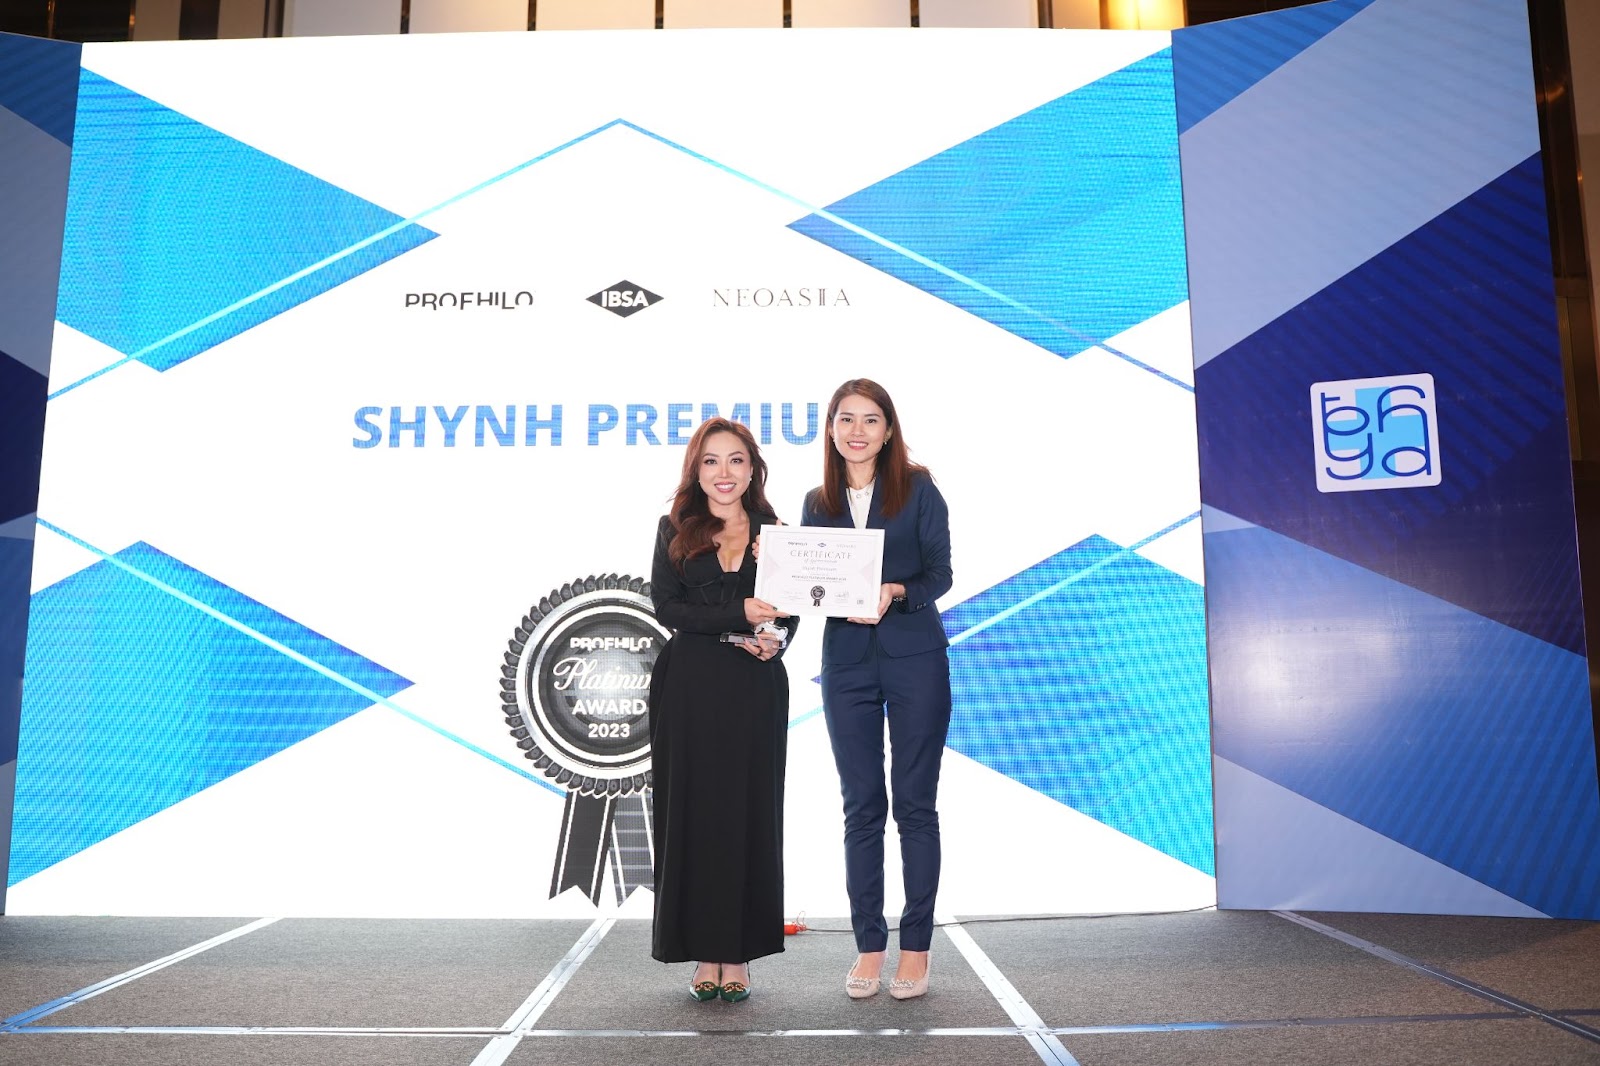 Shynh Premium tiếp tục nhận giải thưởng toàn cầu về liệu pháp dưỡng da sinh học Profhilo từ NeoAsia  - 1